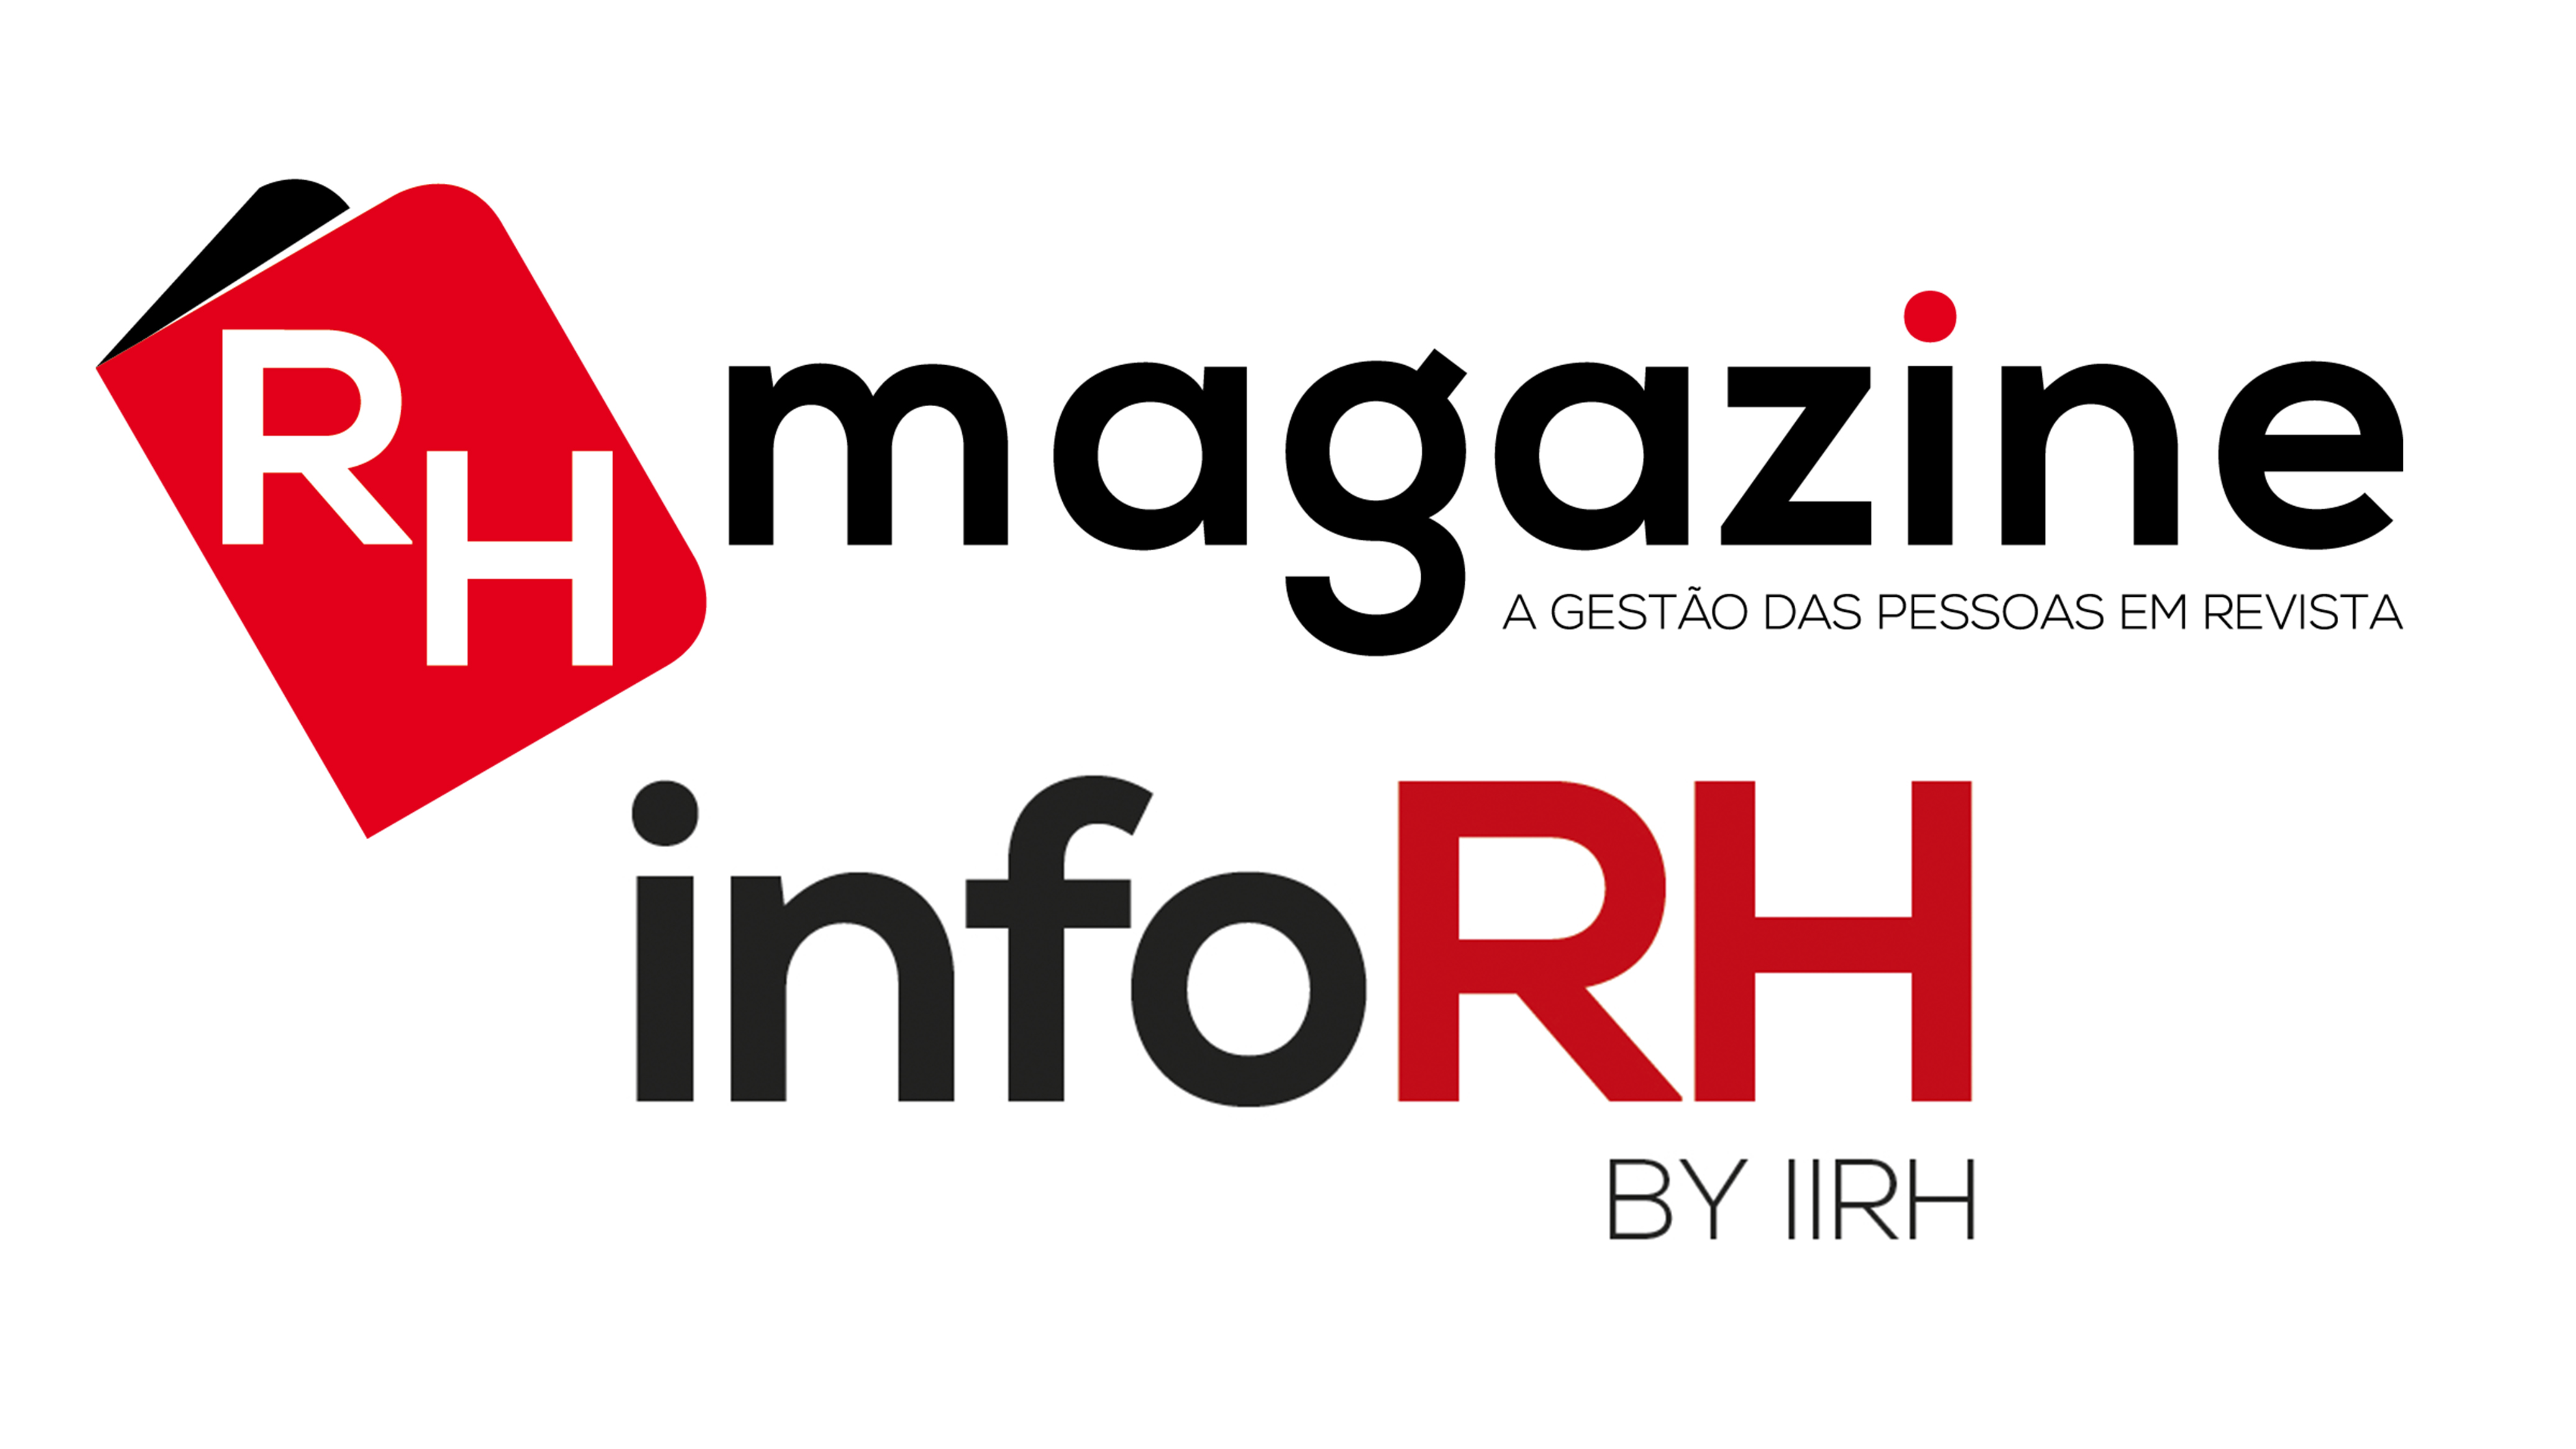  RHmagazine revela, em março, as melhores empresas para trabalhar